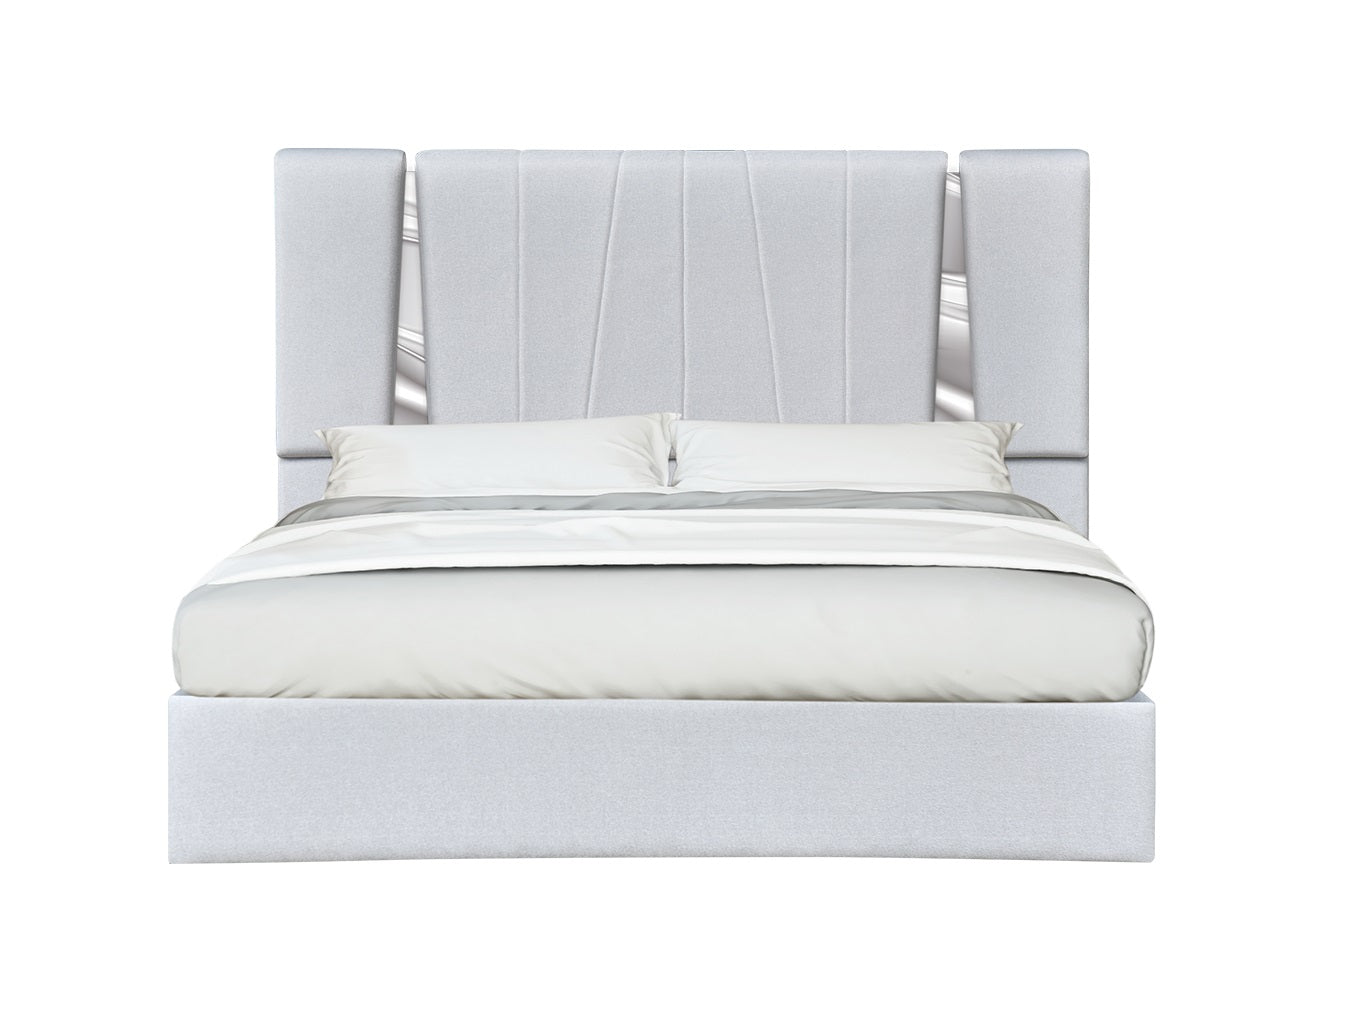 Matisse Queen Bed Silver Grey by JM